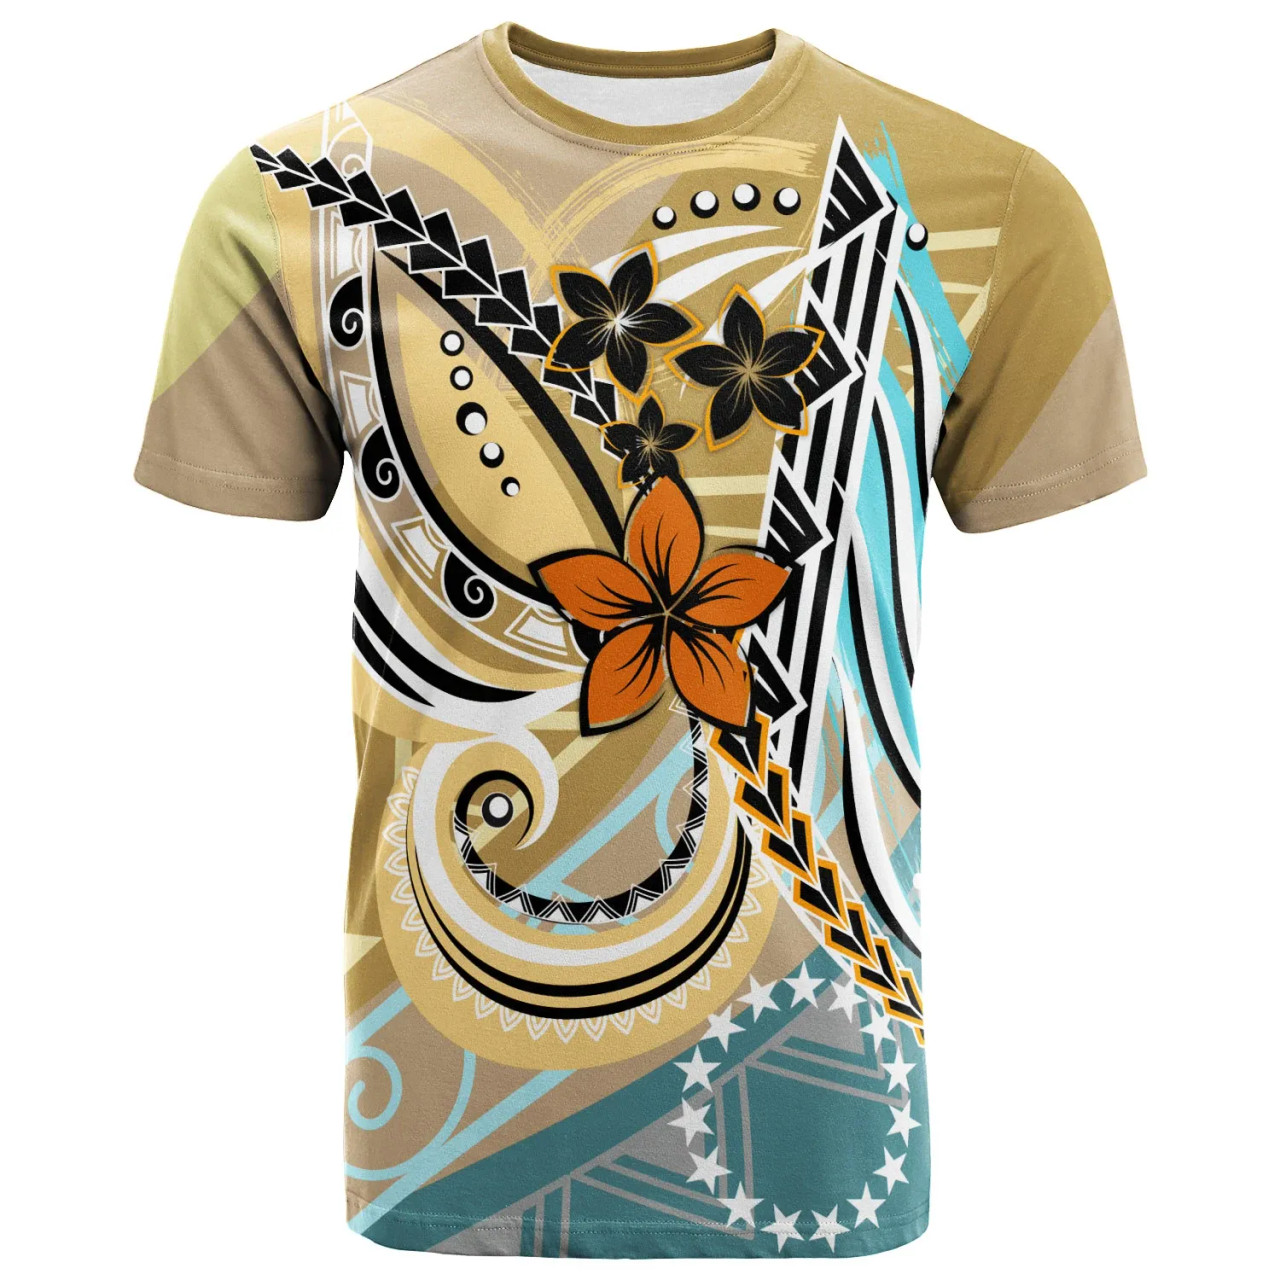 Cook Islands T-Shirt - Flower Ribons 1